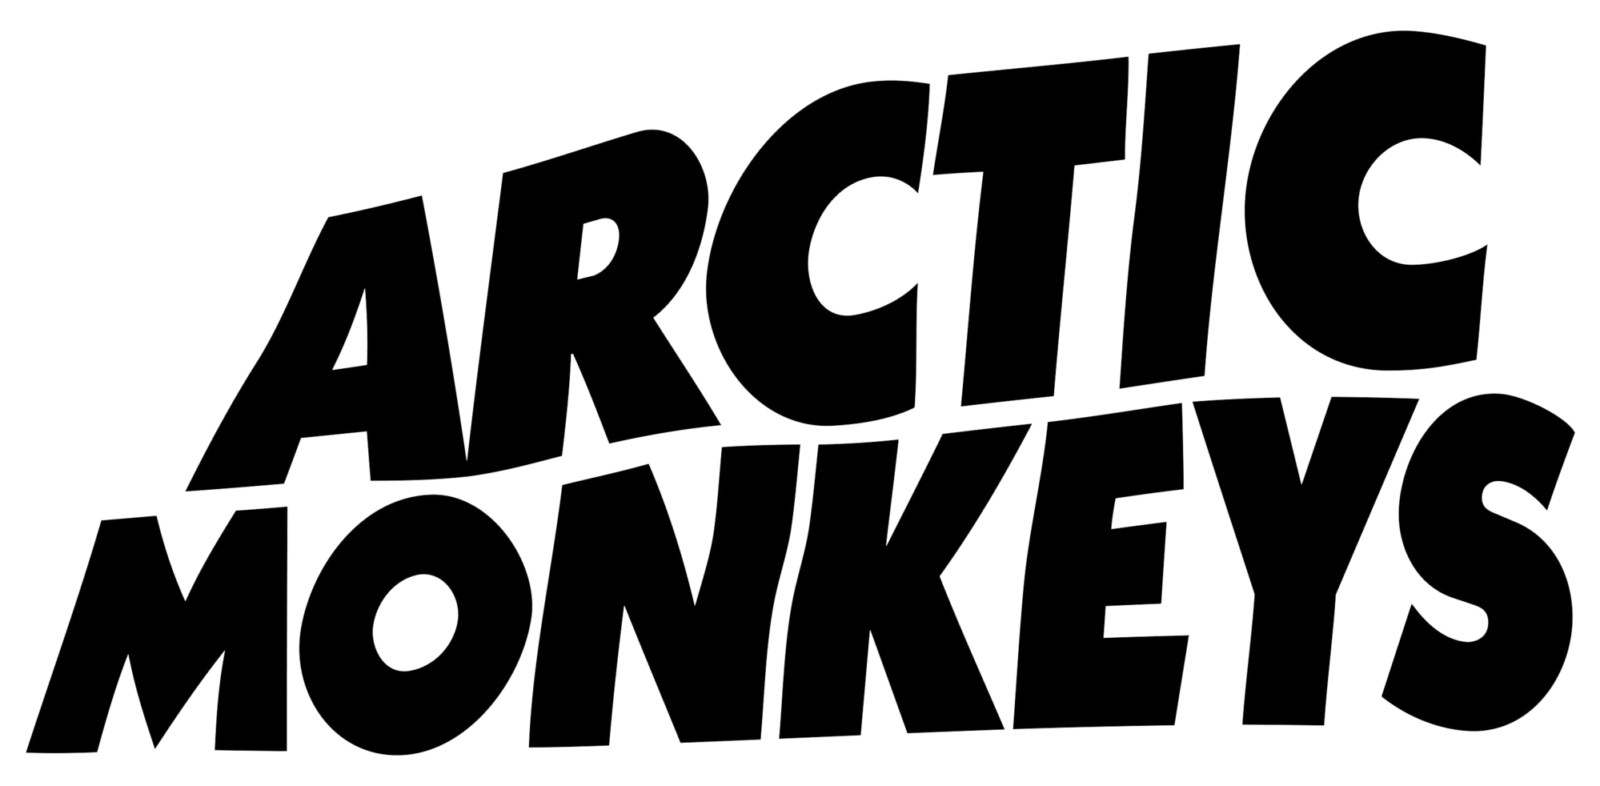 Arctic Monkeys Logo